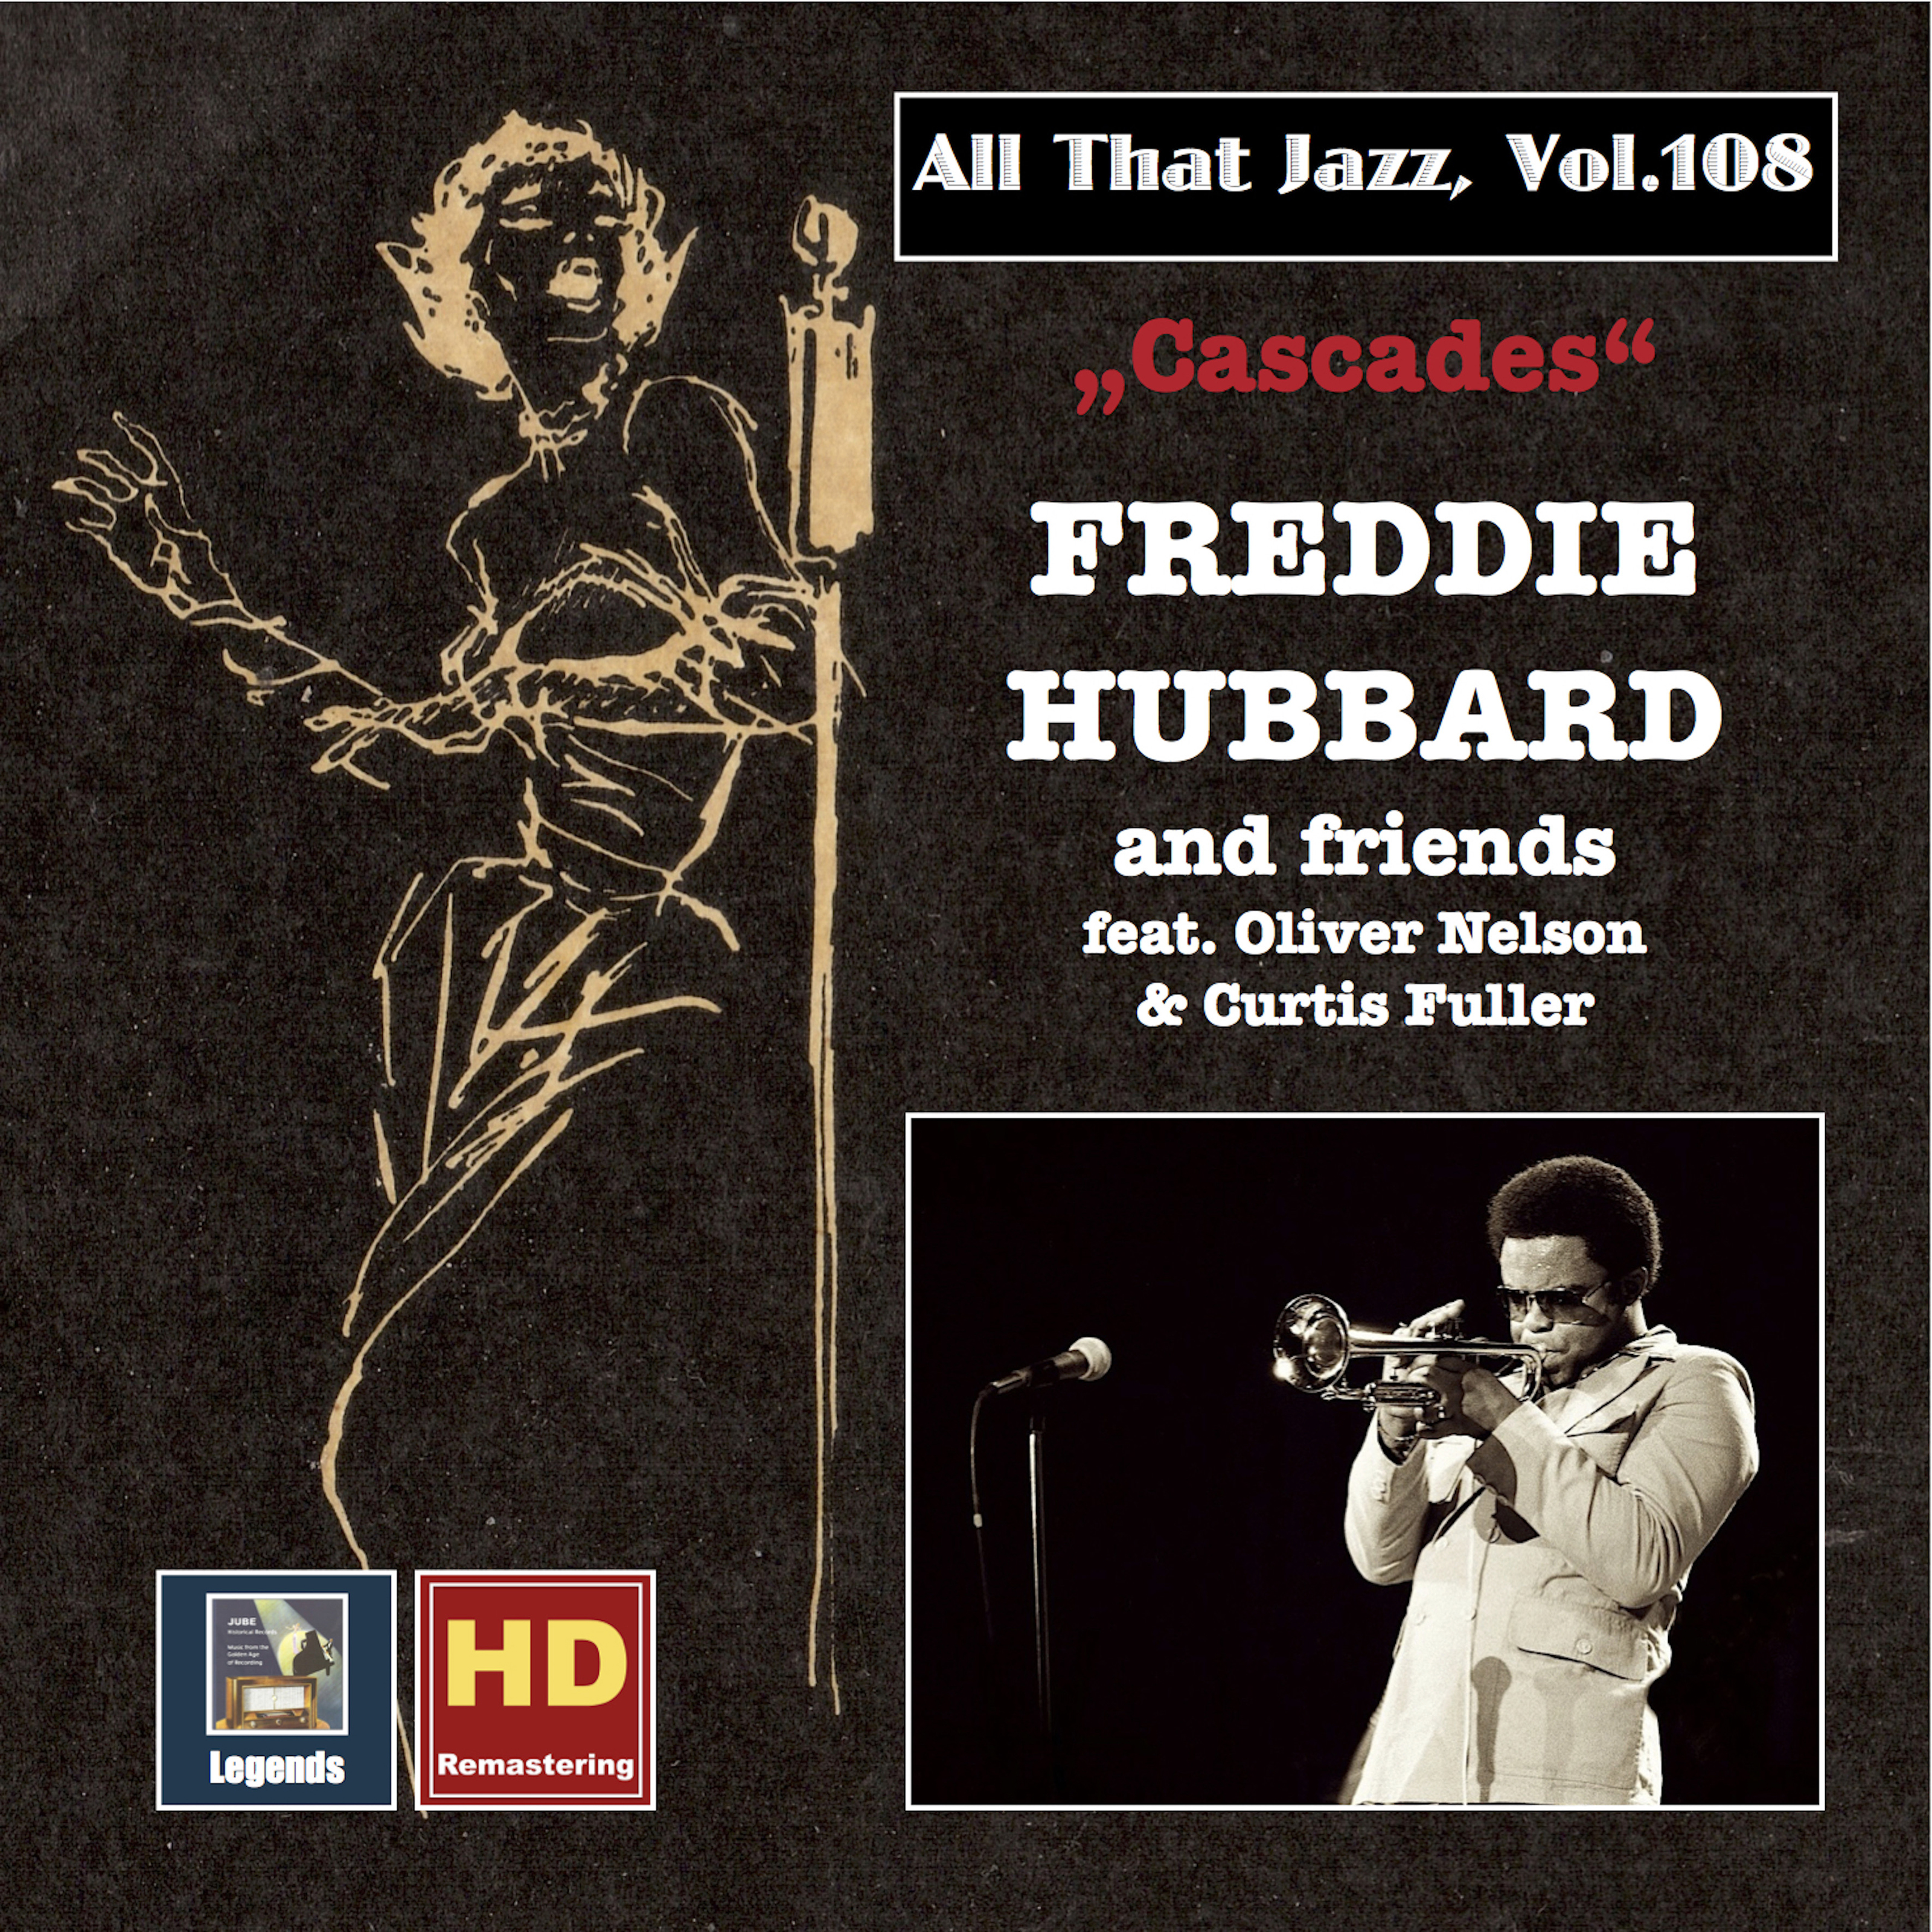 All That Jazz, Vol. 108: Cascades  Freddie Hubbard  Friends